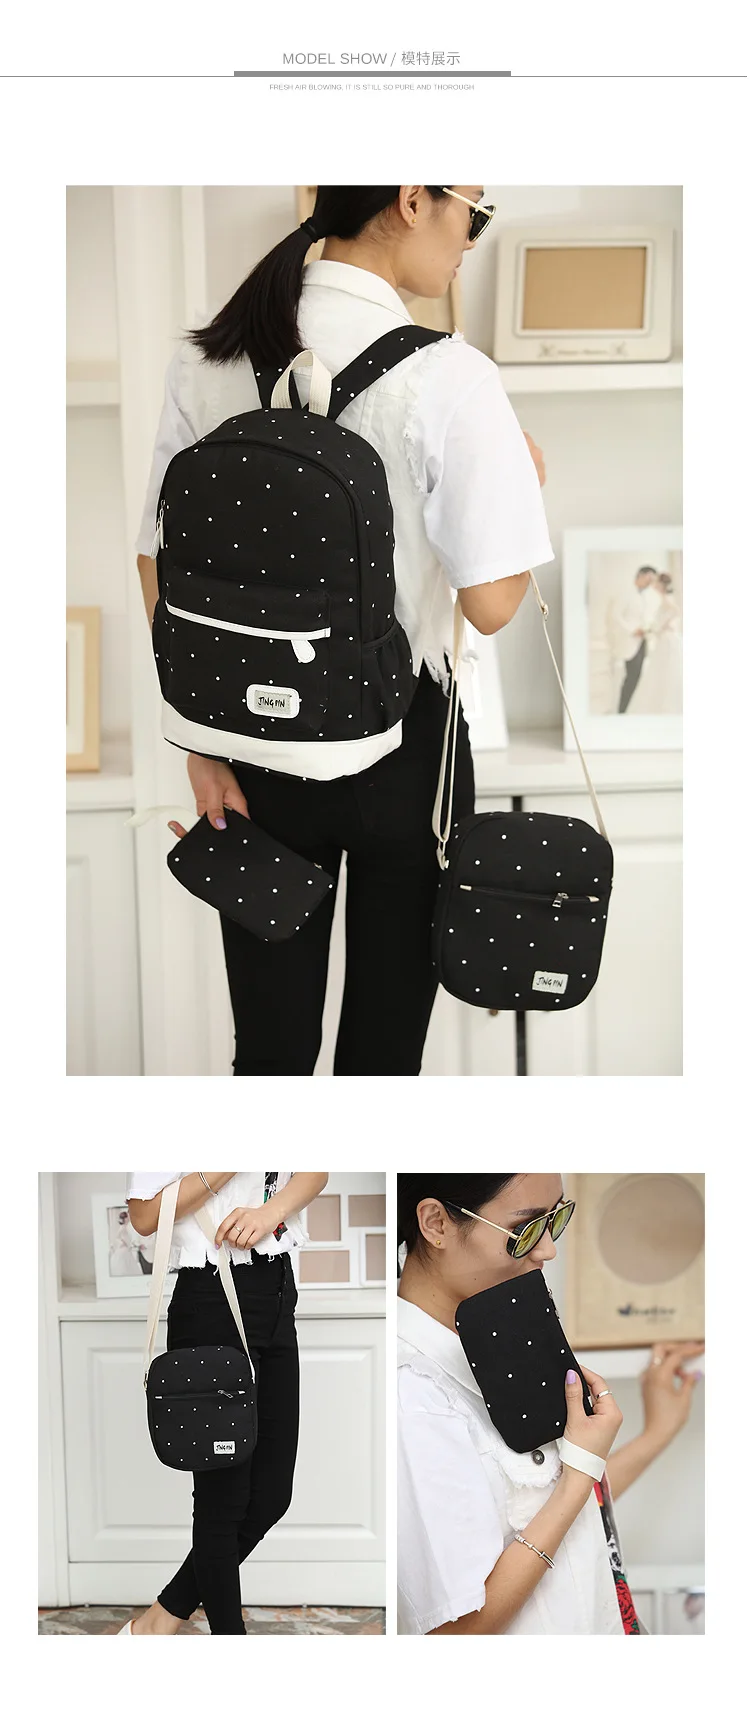 WENYUJH, женские сумки, унисекс, холщовая школьная сумка из трех частей, набор, волнистая точка, три предмета, Студенческая сумка на плечо, рюкзак для путешествий, модный